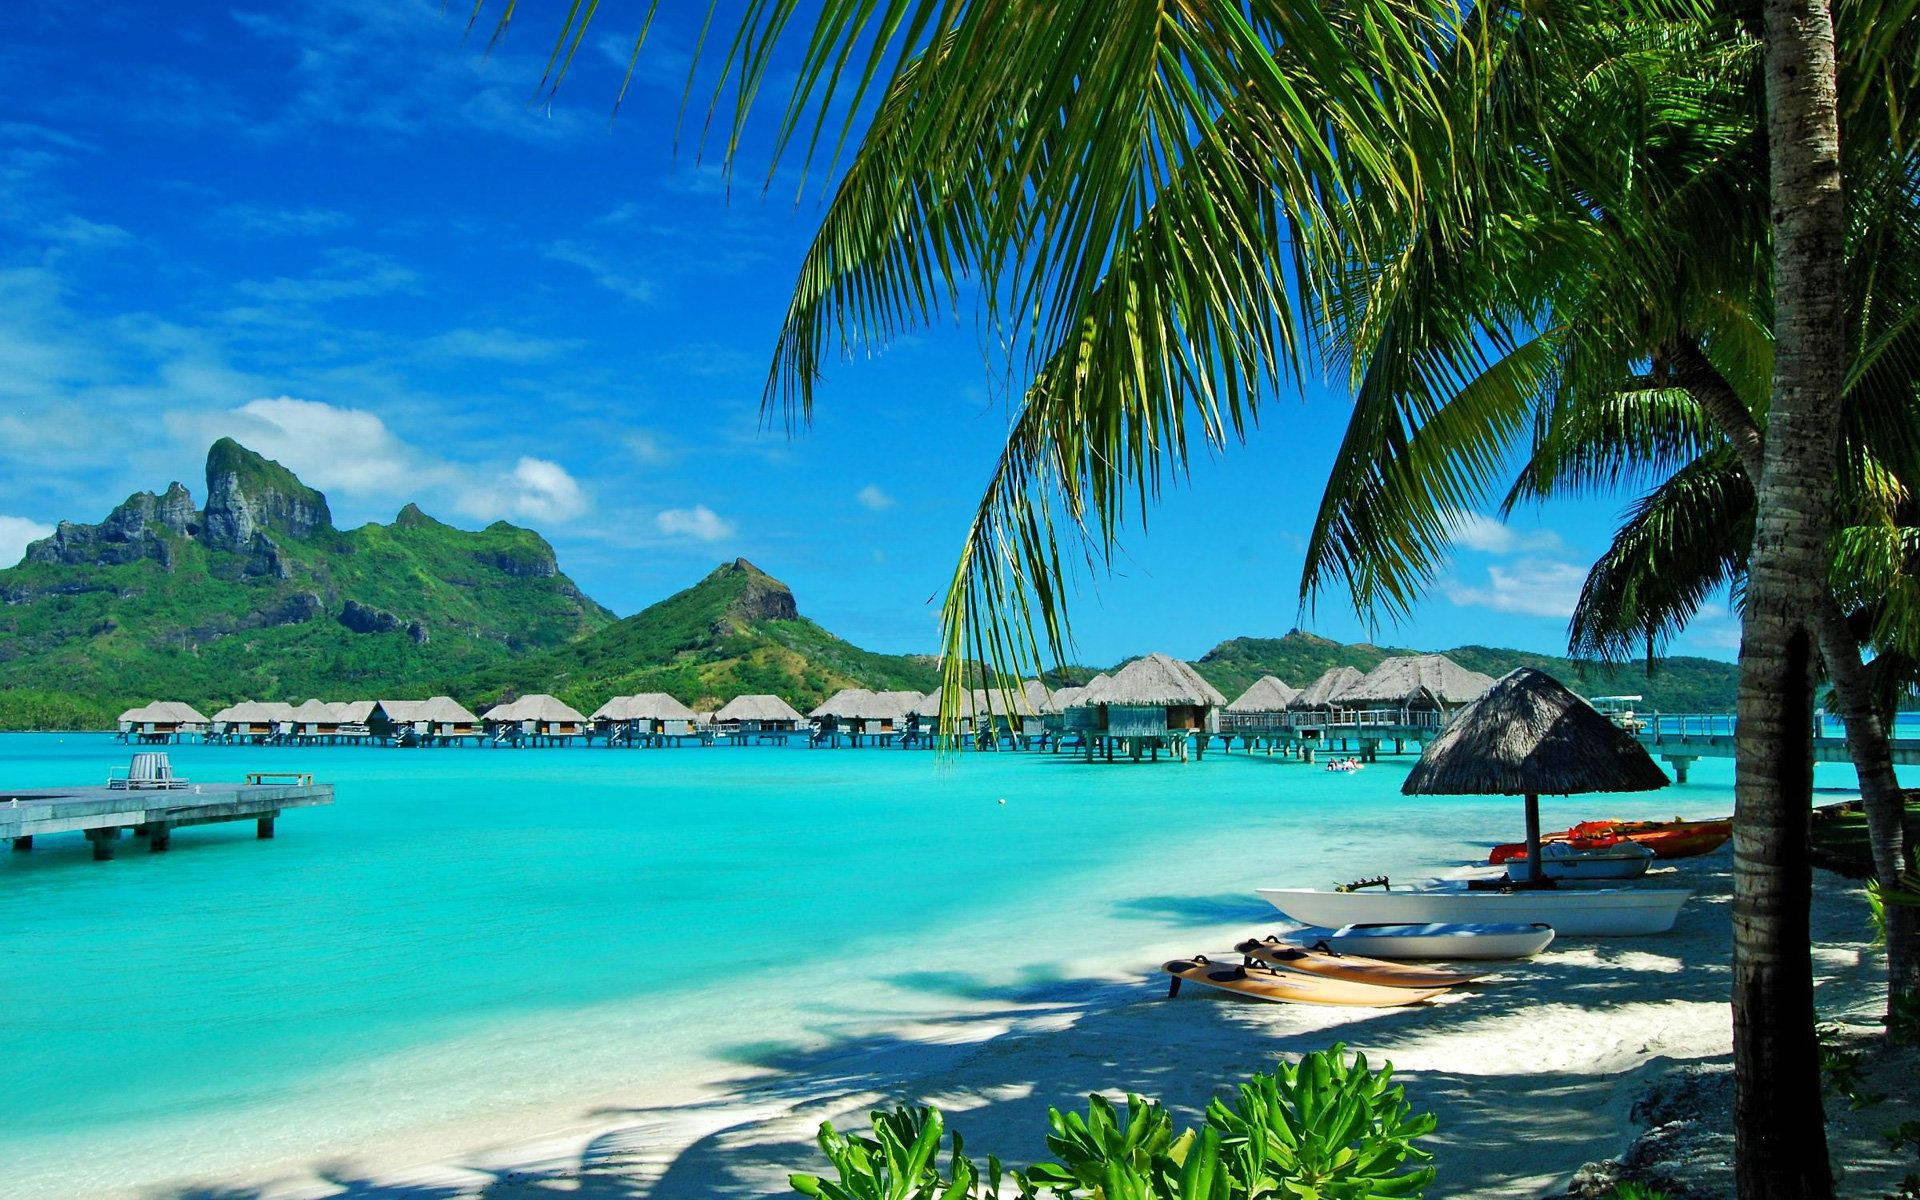 Hawaii, Coast, Resort, Rest, Palm Trees, Lagoon, Blue Water Wallpaper